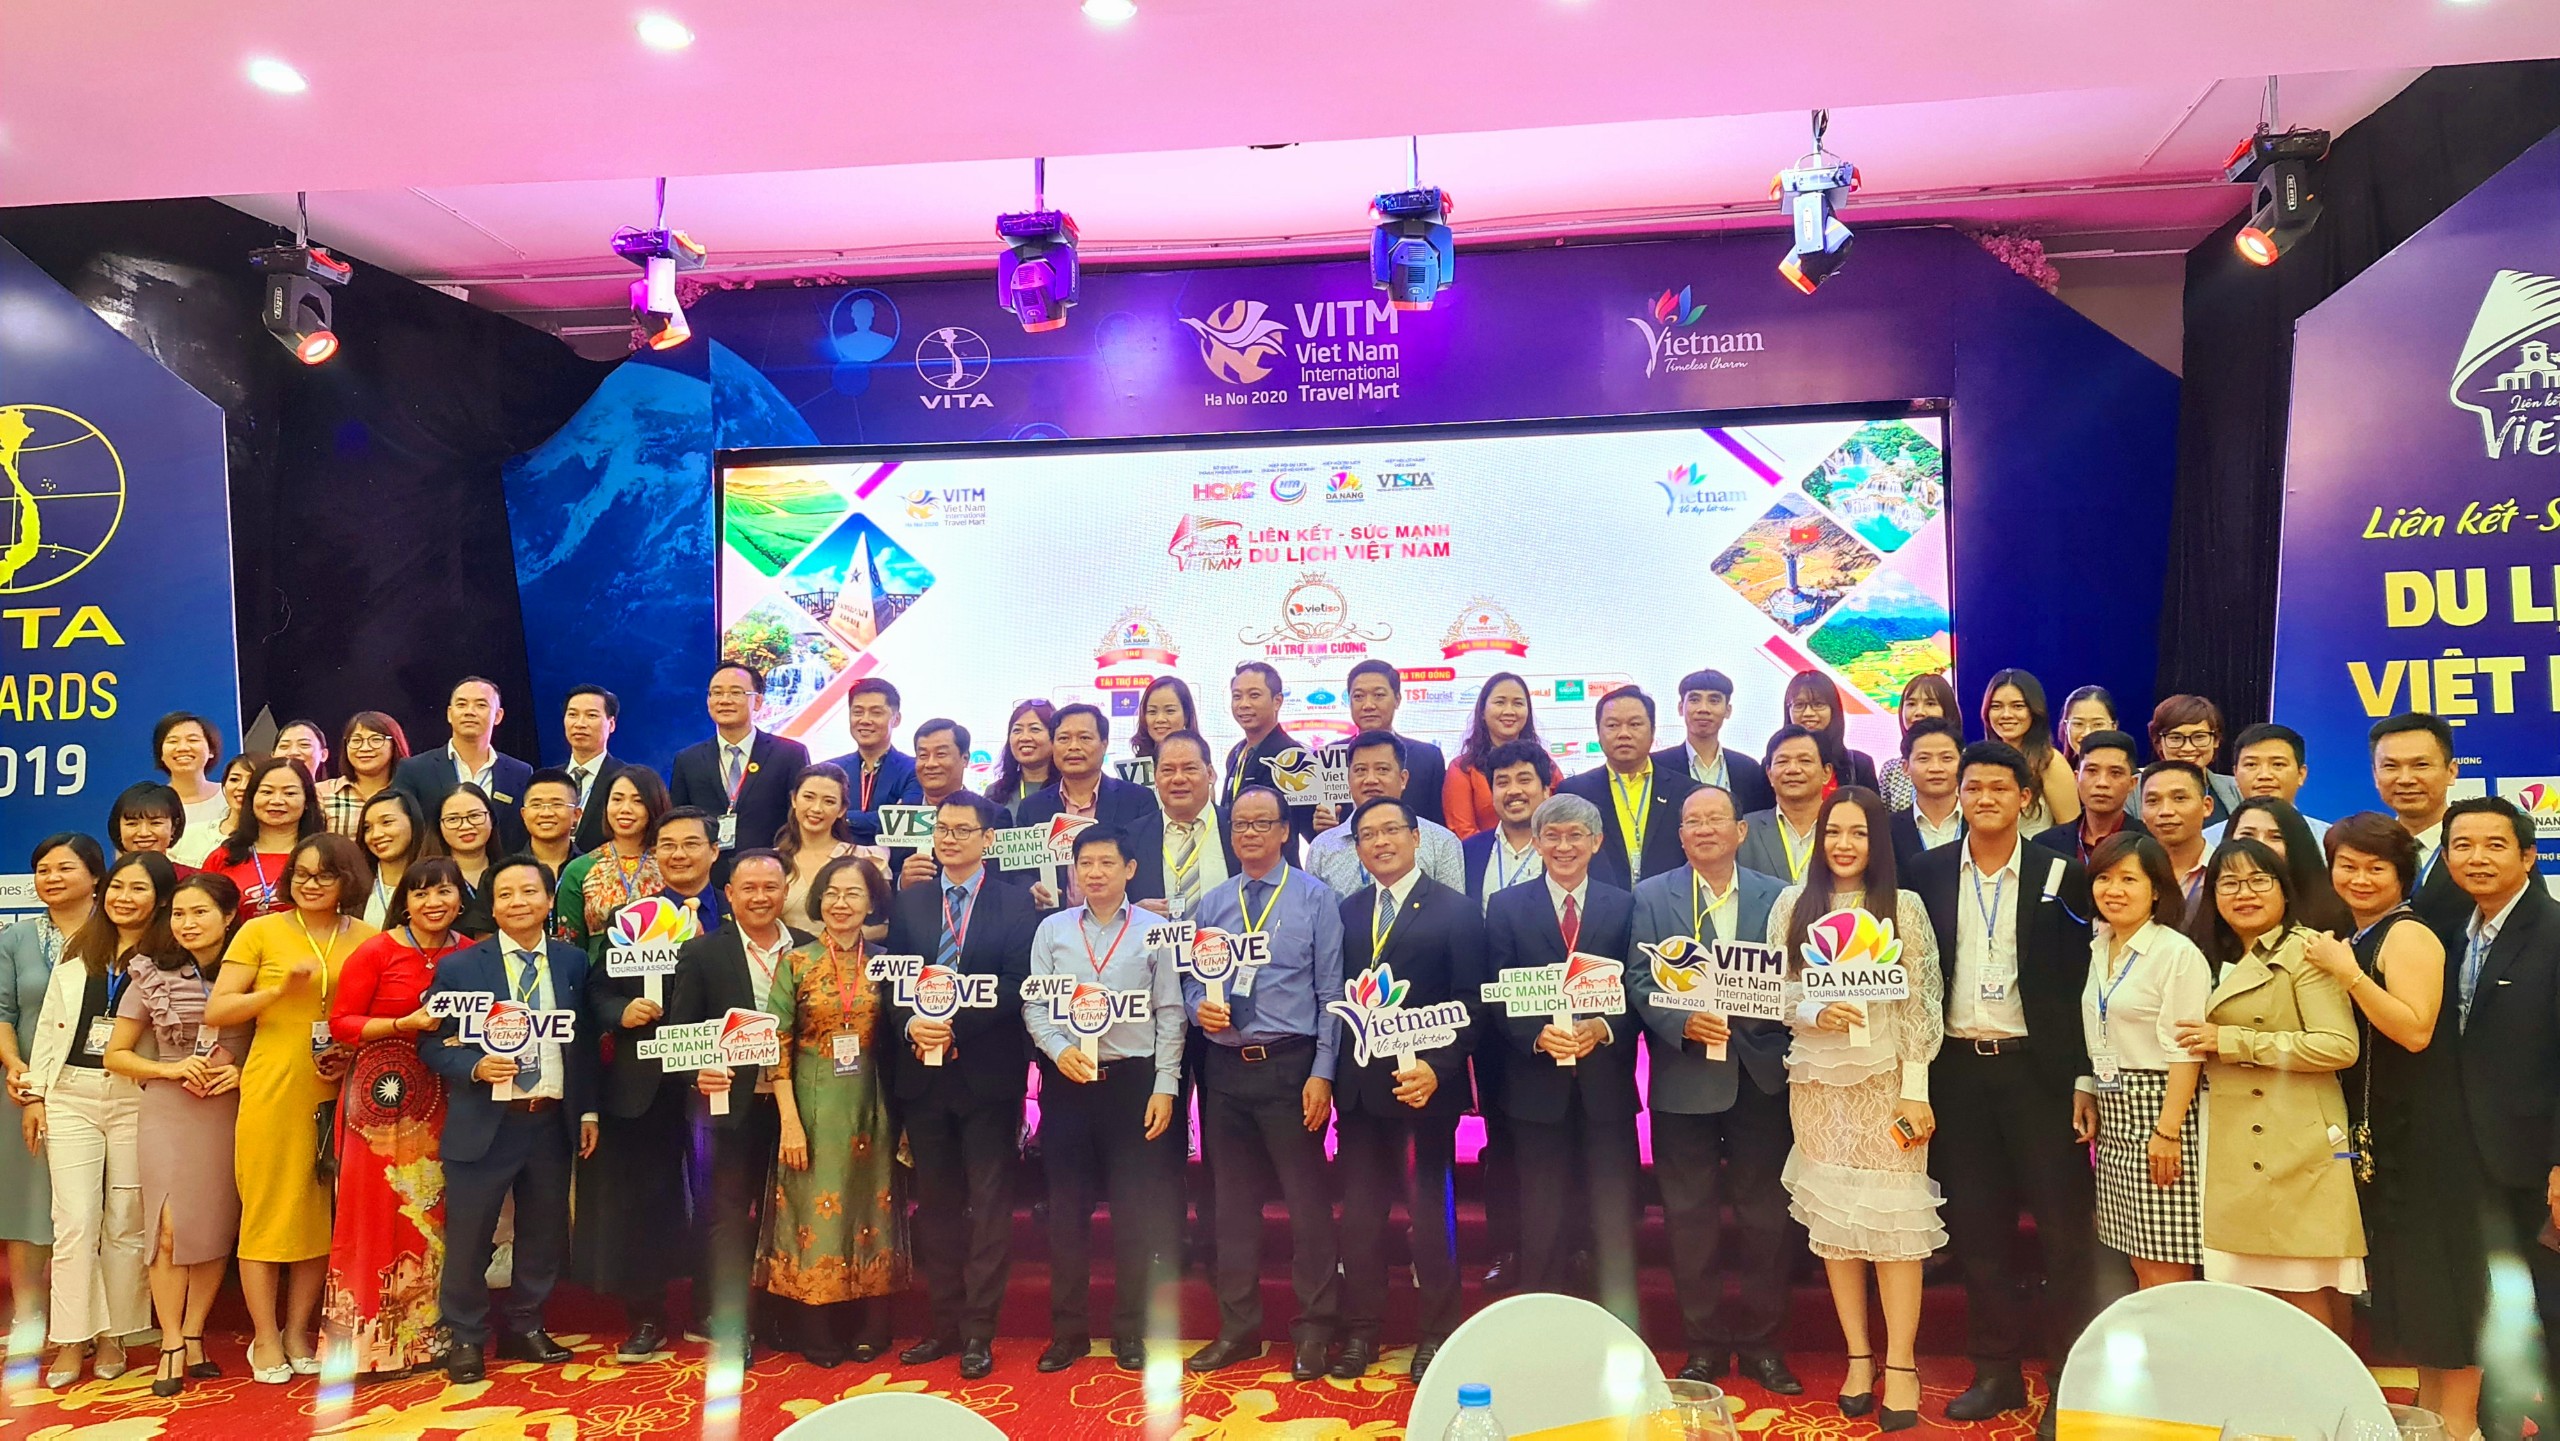 Hướng dẫn truy cập Phần mềm TravelMaster - Sự kiện Liên kết sức mạnh Du lịch Việt Nam - Lần 2